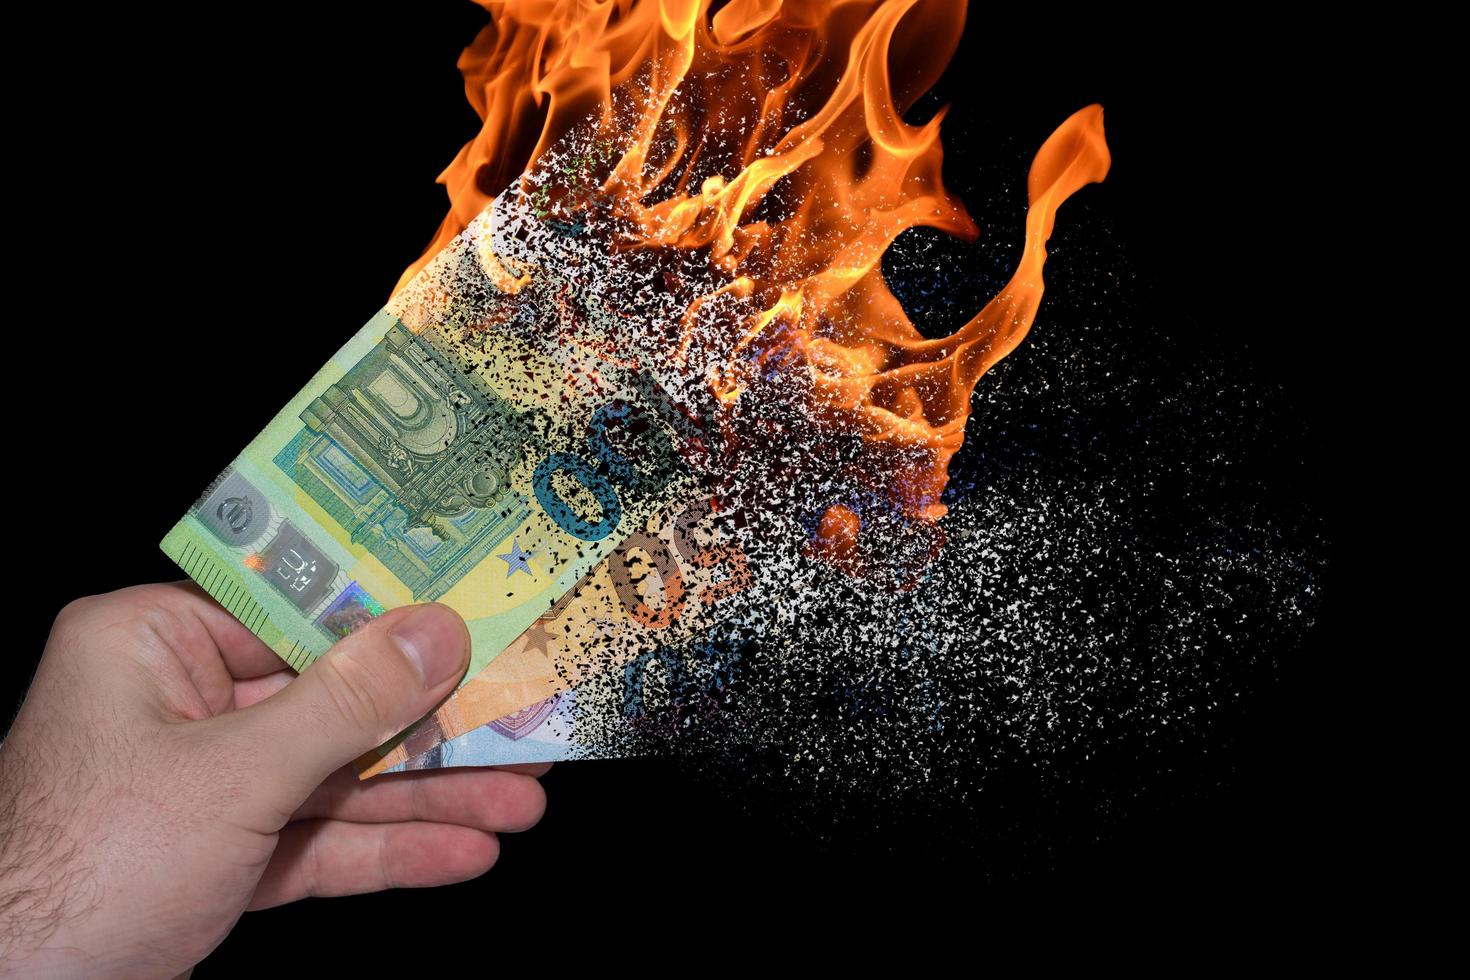 trois billets en euros en feu tenus dans une main se décomposent et se dissolvent en raison de l'inflation avec du noir photo